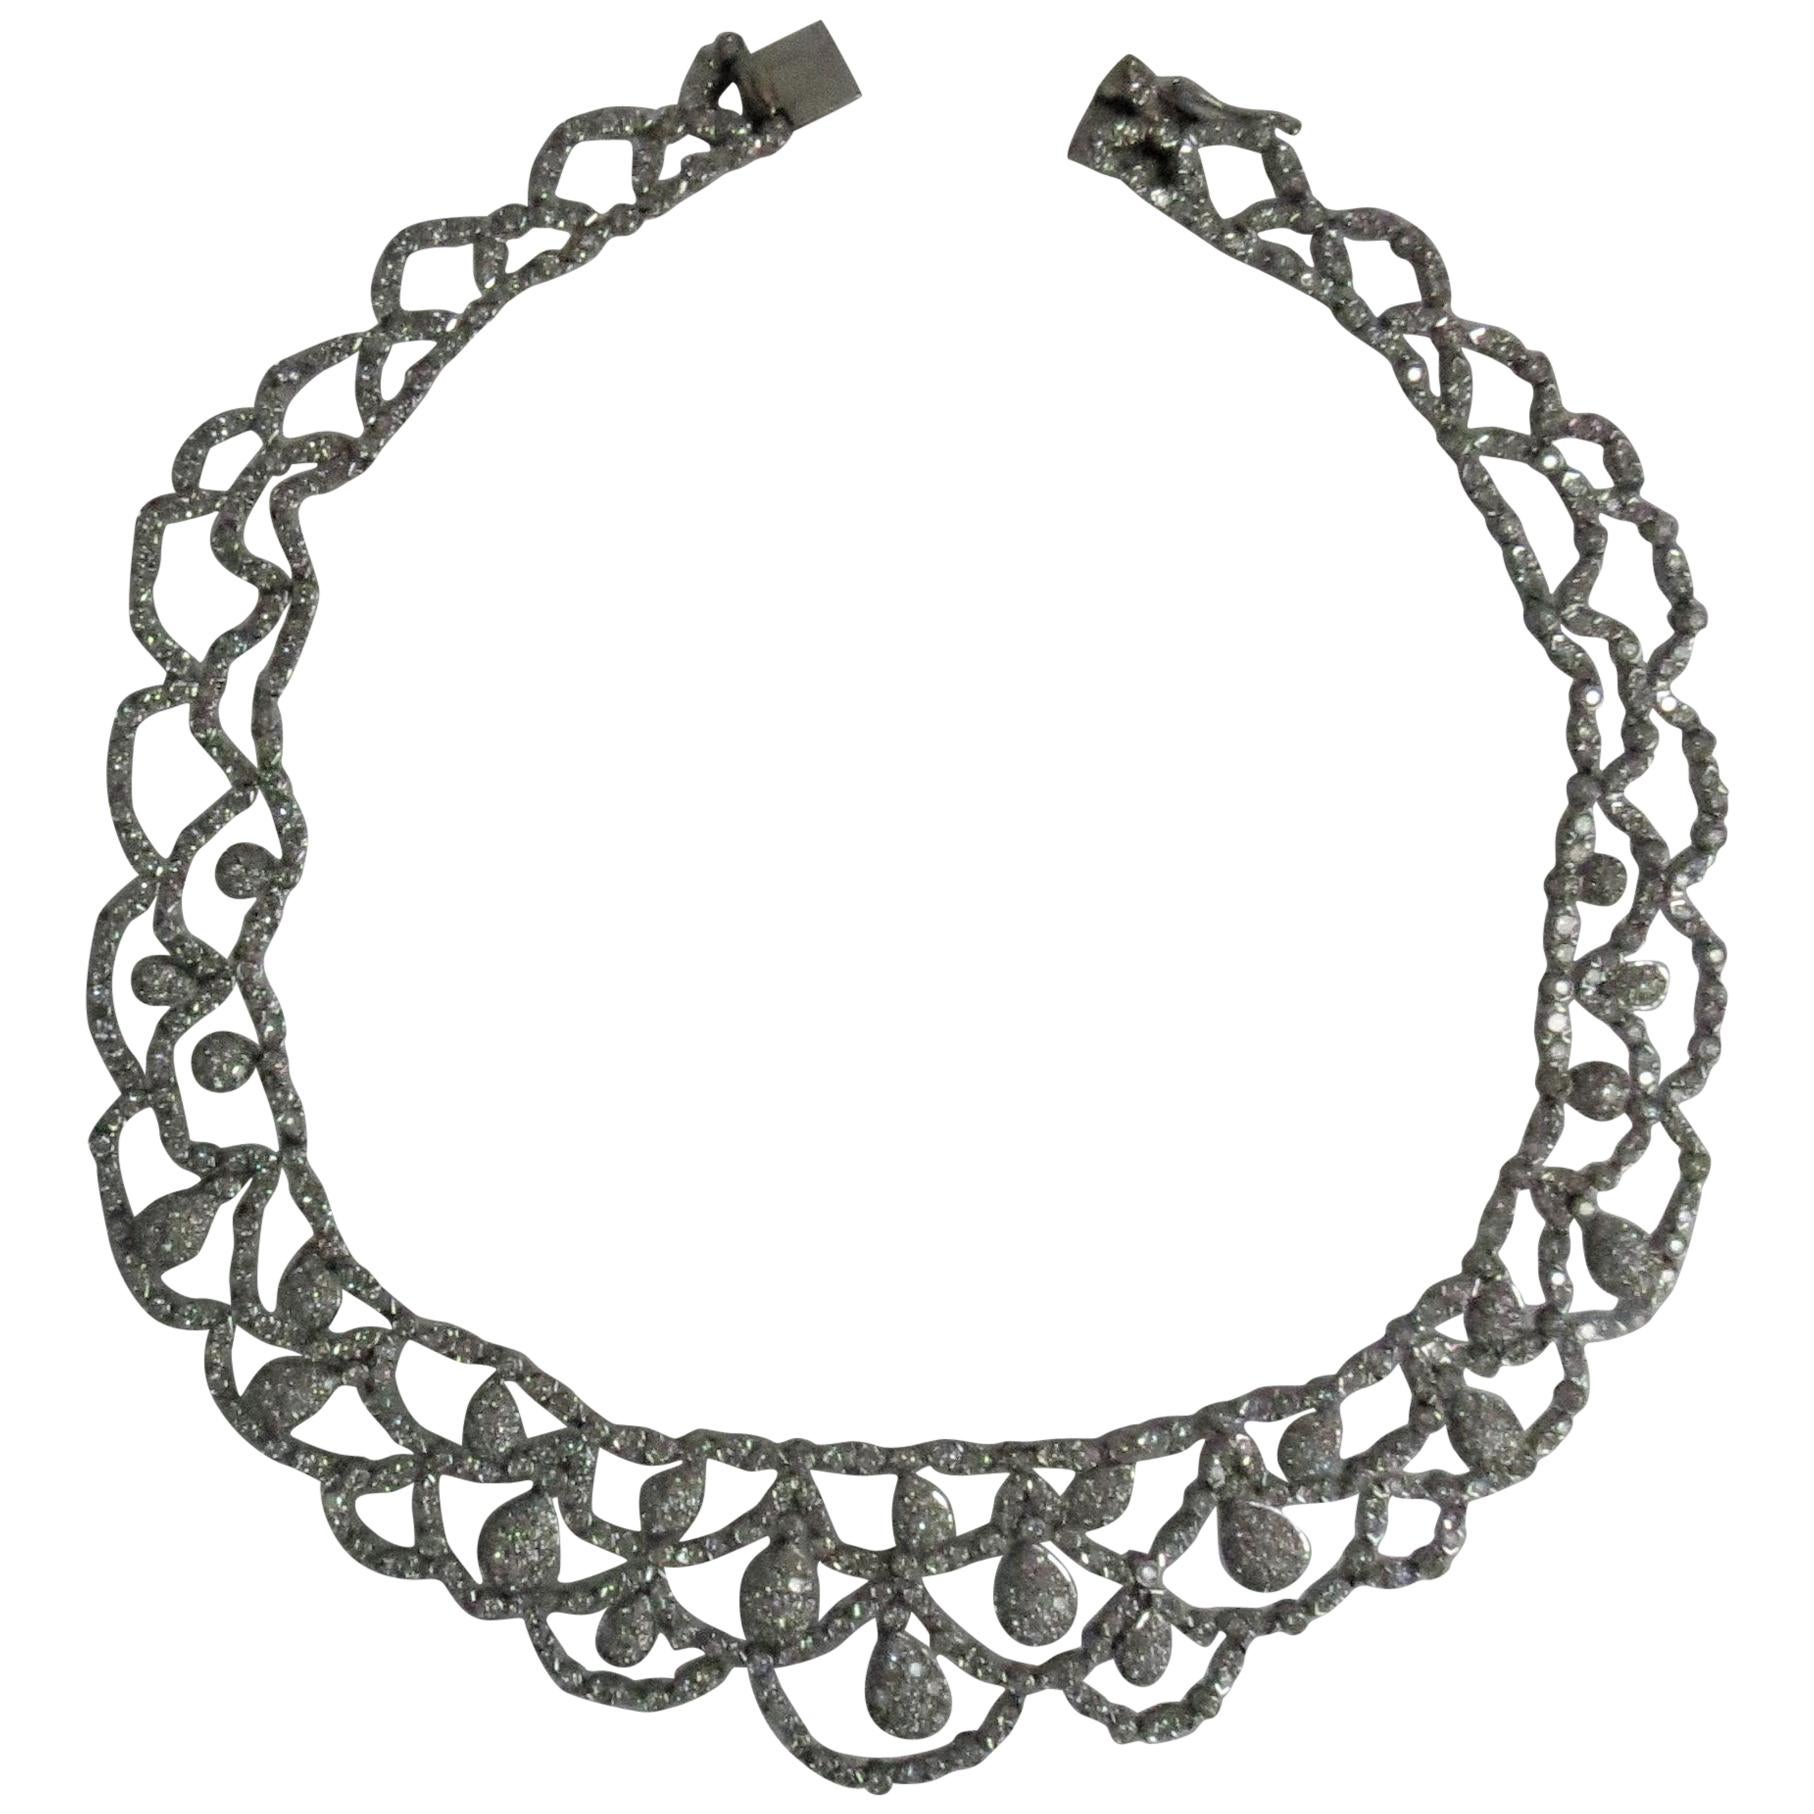 18 Karat White Gold Flexible Diamond Choker Necklace